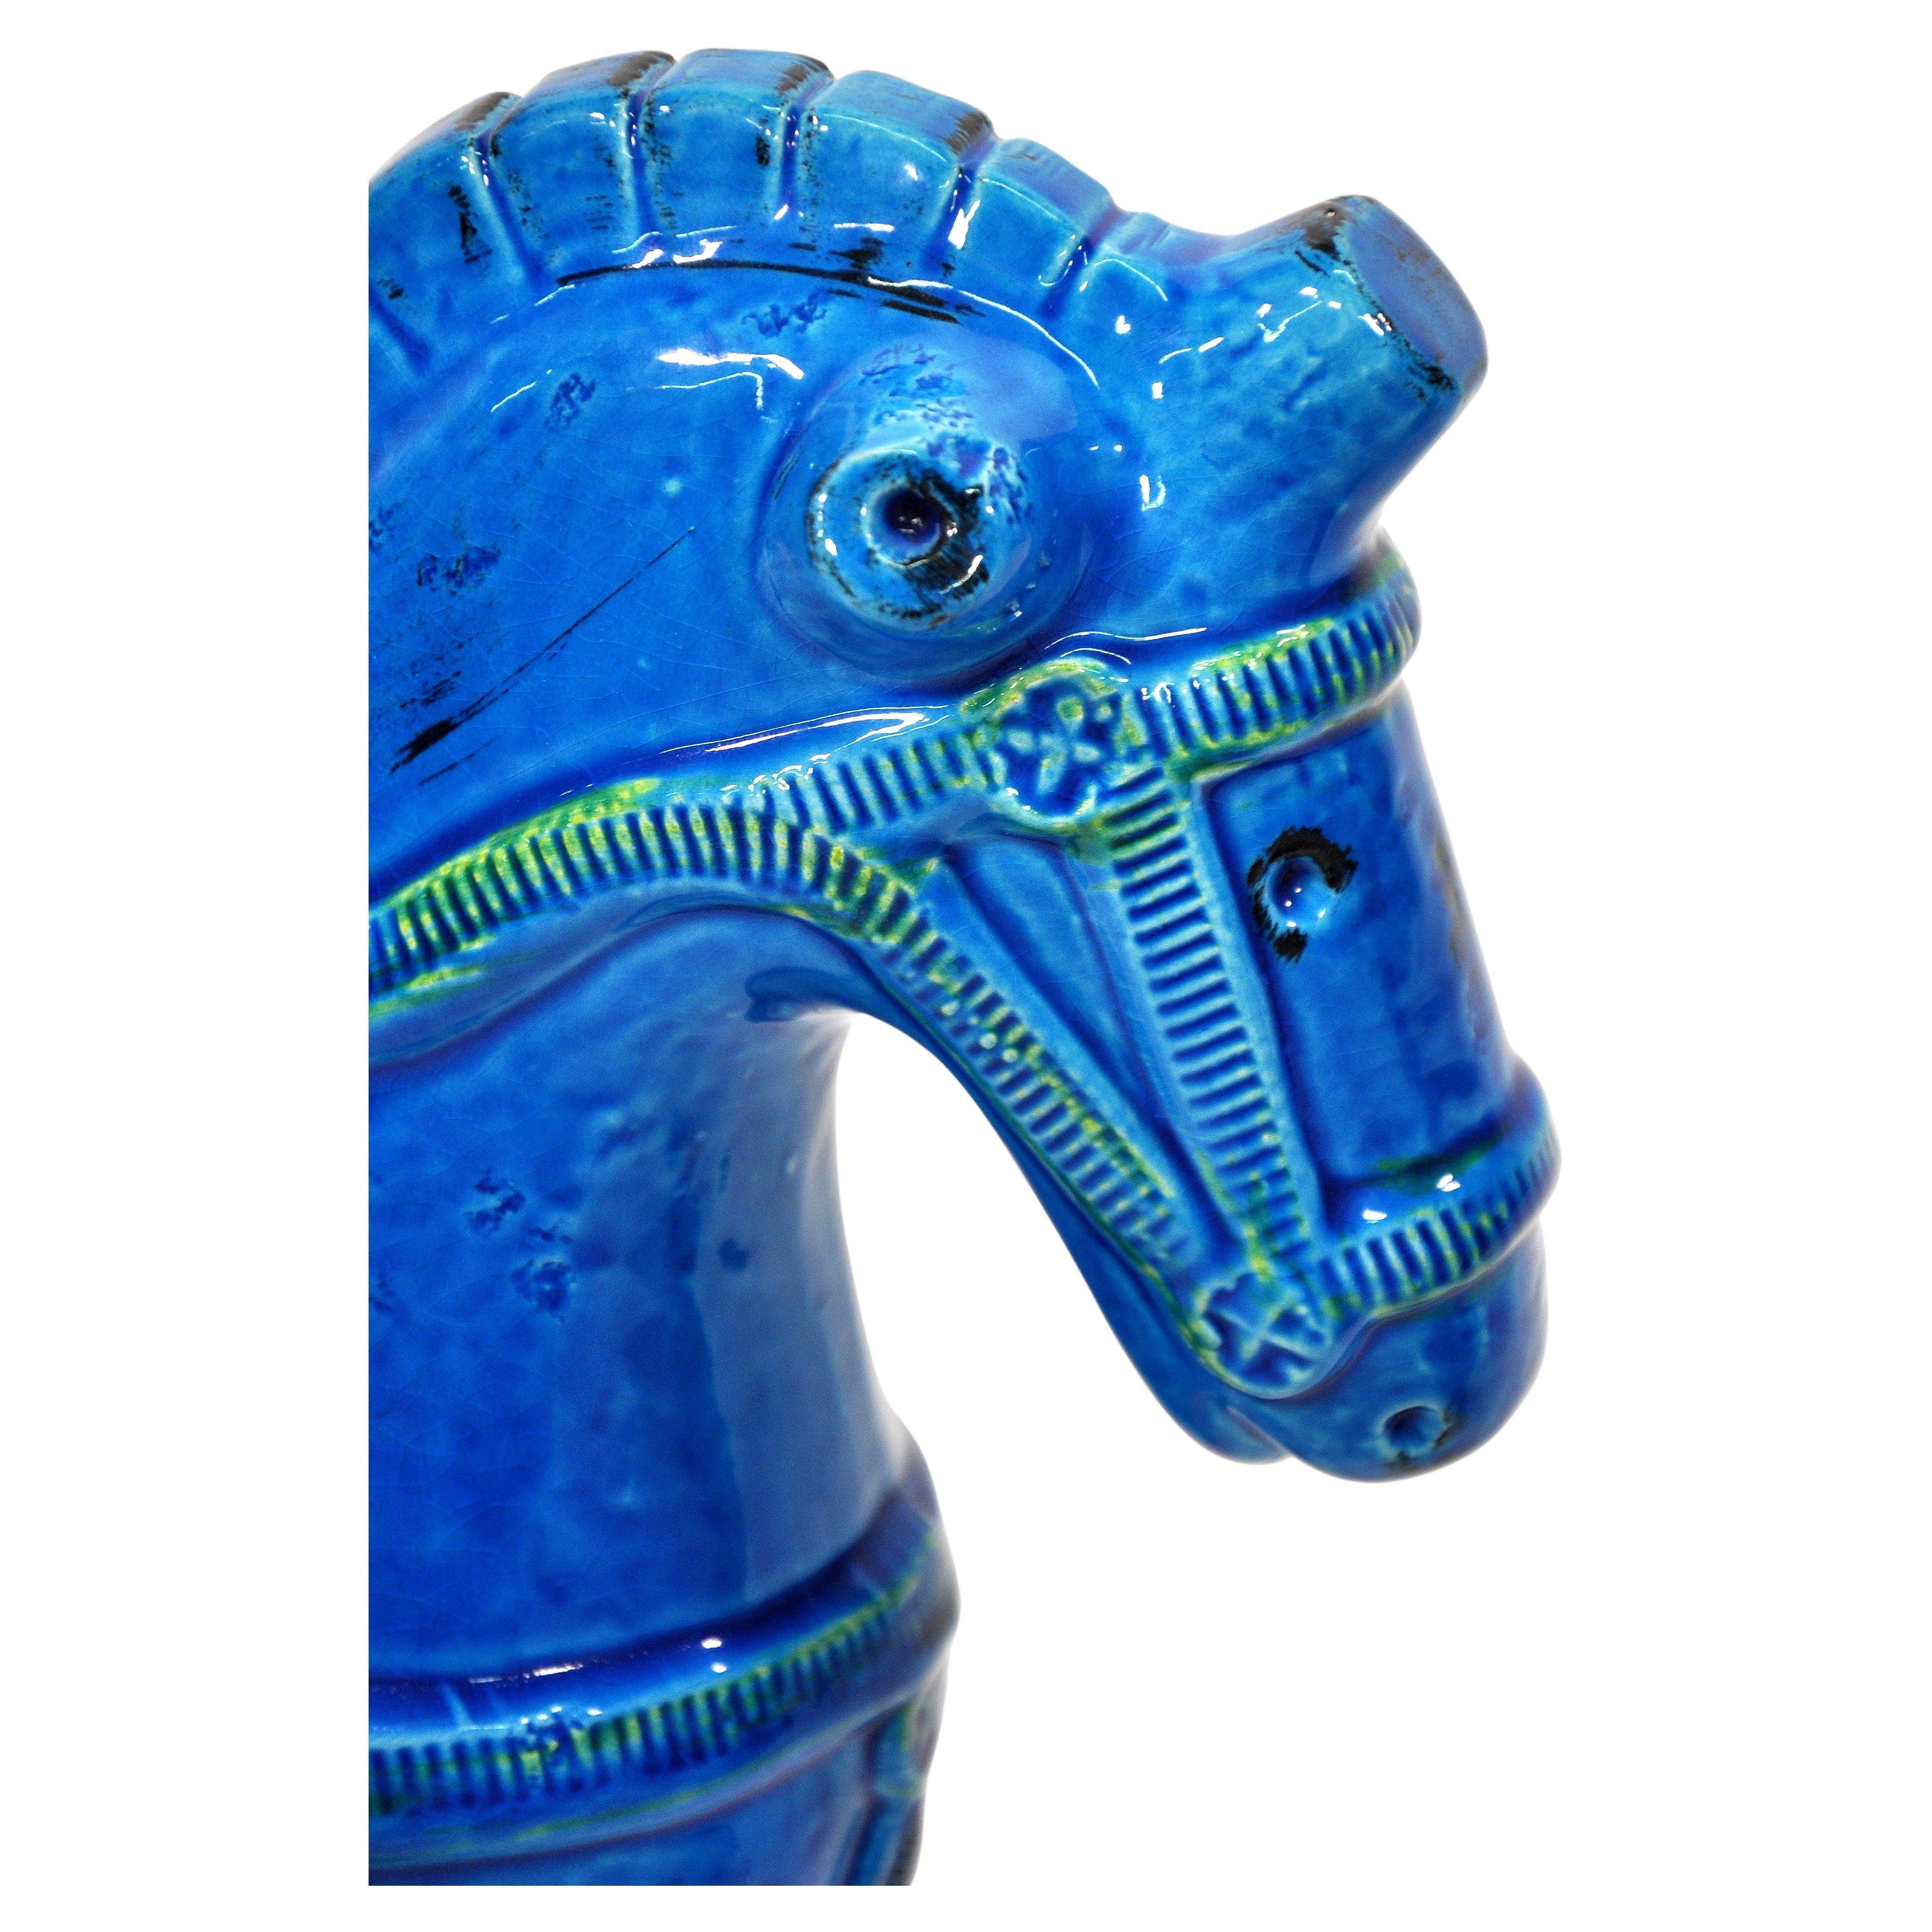 Aldo Londi for Bitossi Rimini Blu Large Ceramic Horse In Excellent Condition For Sale In Miami, FL